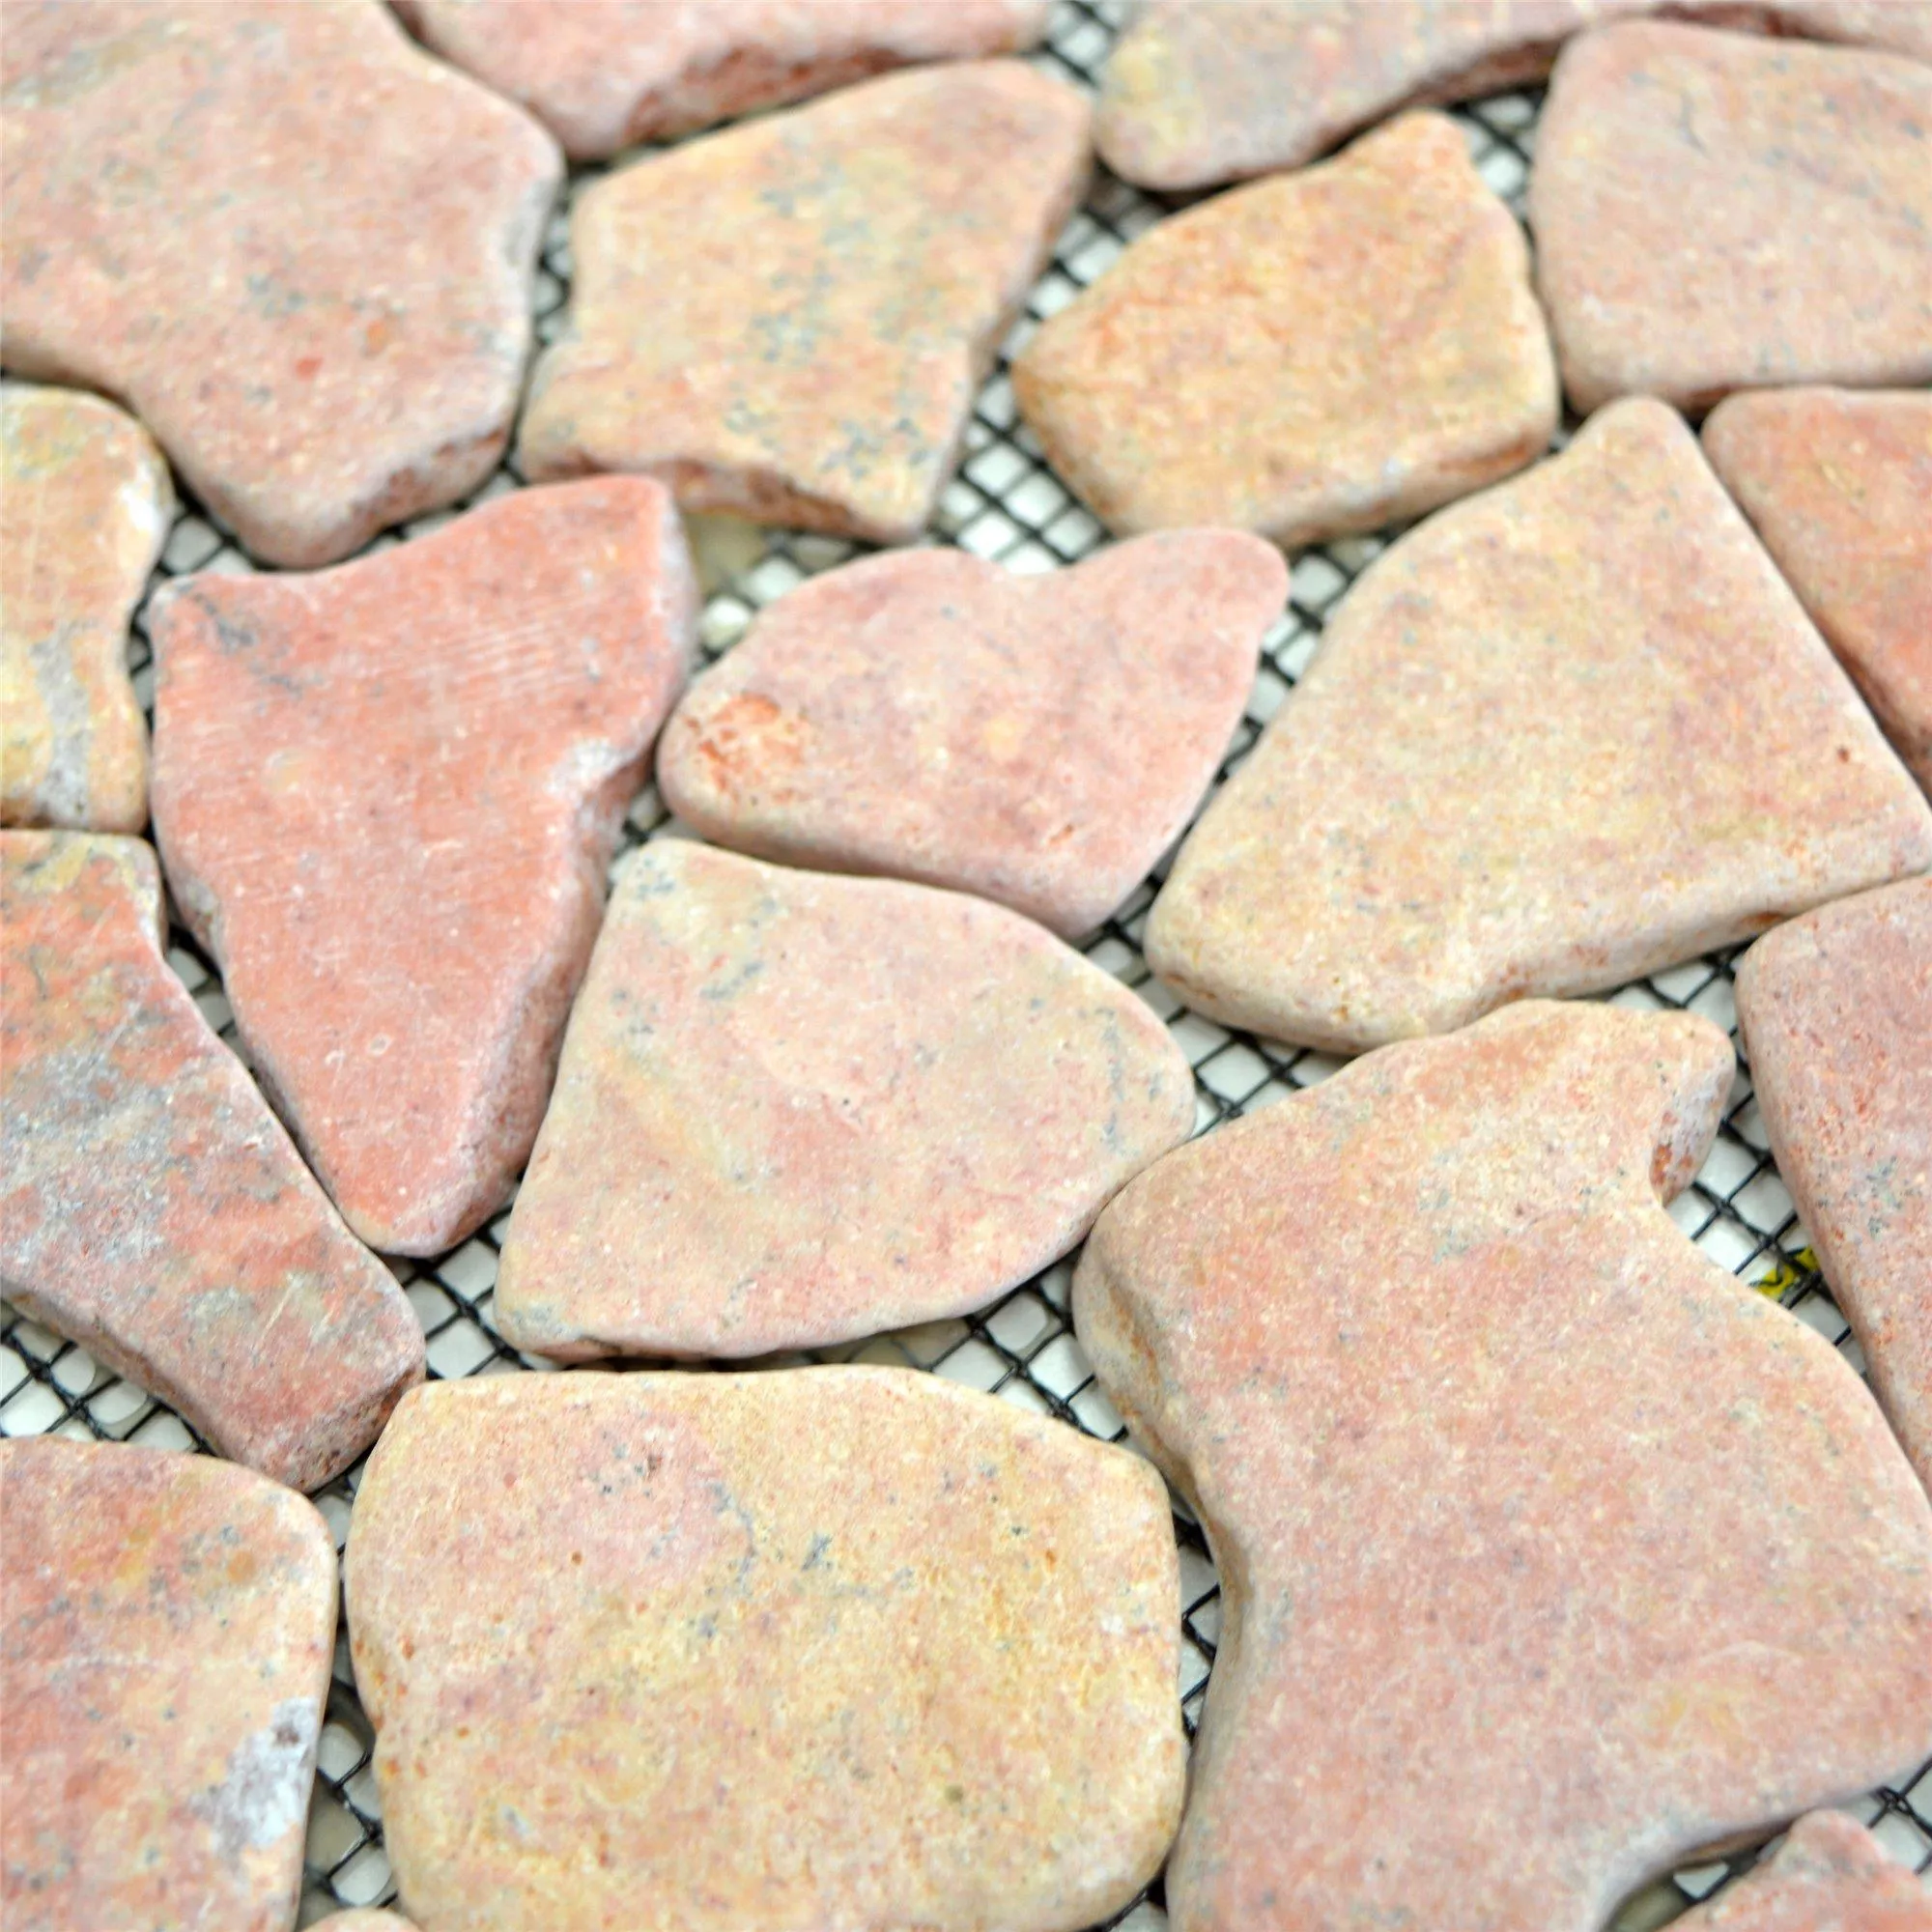 Sample Marble Broken Natural Stone Tiles Poseidon Rossoverona